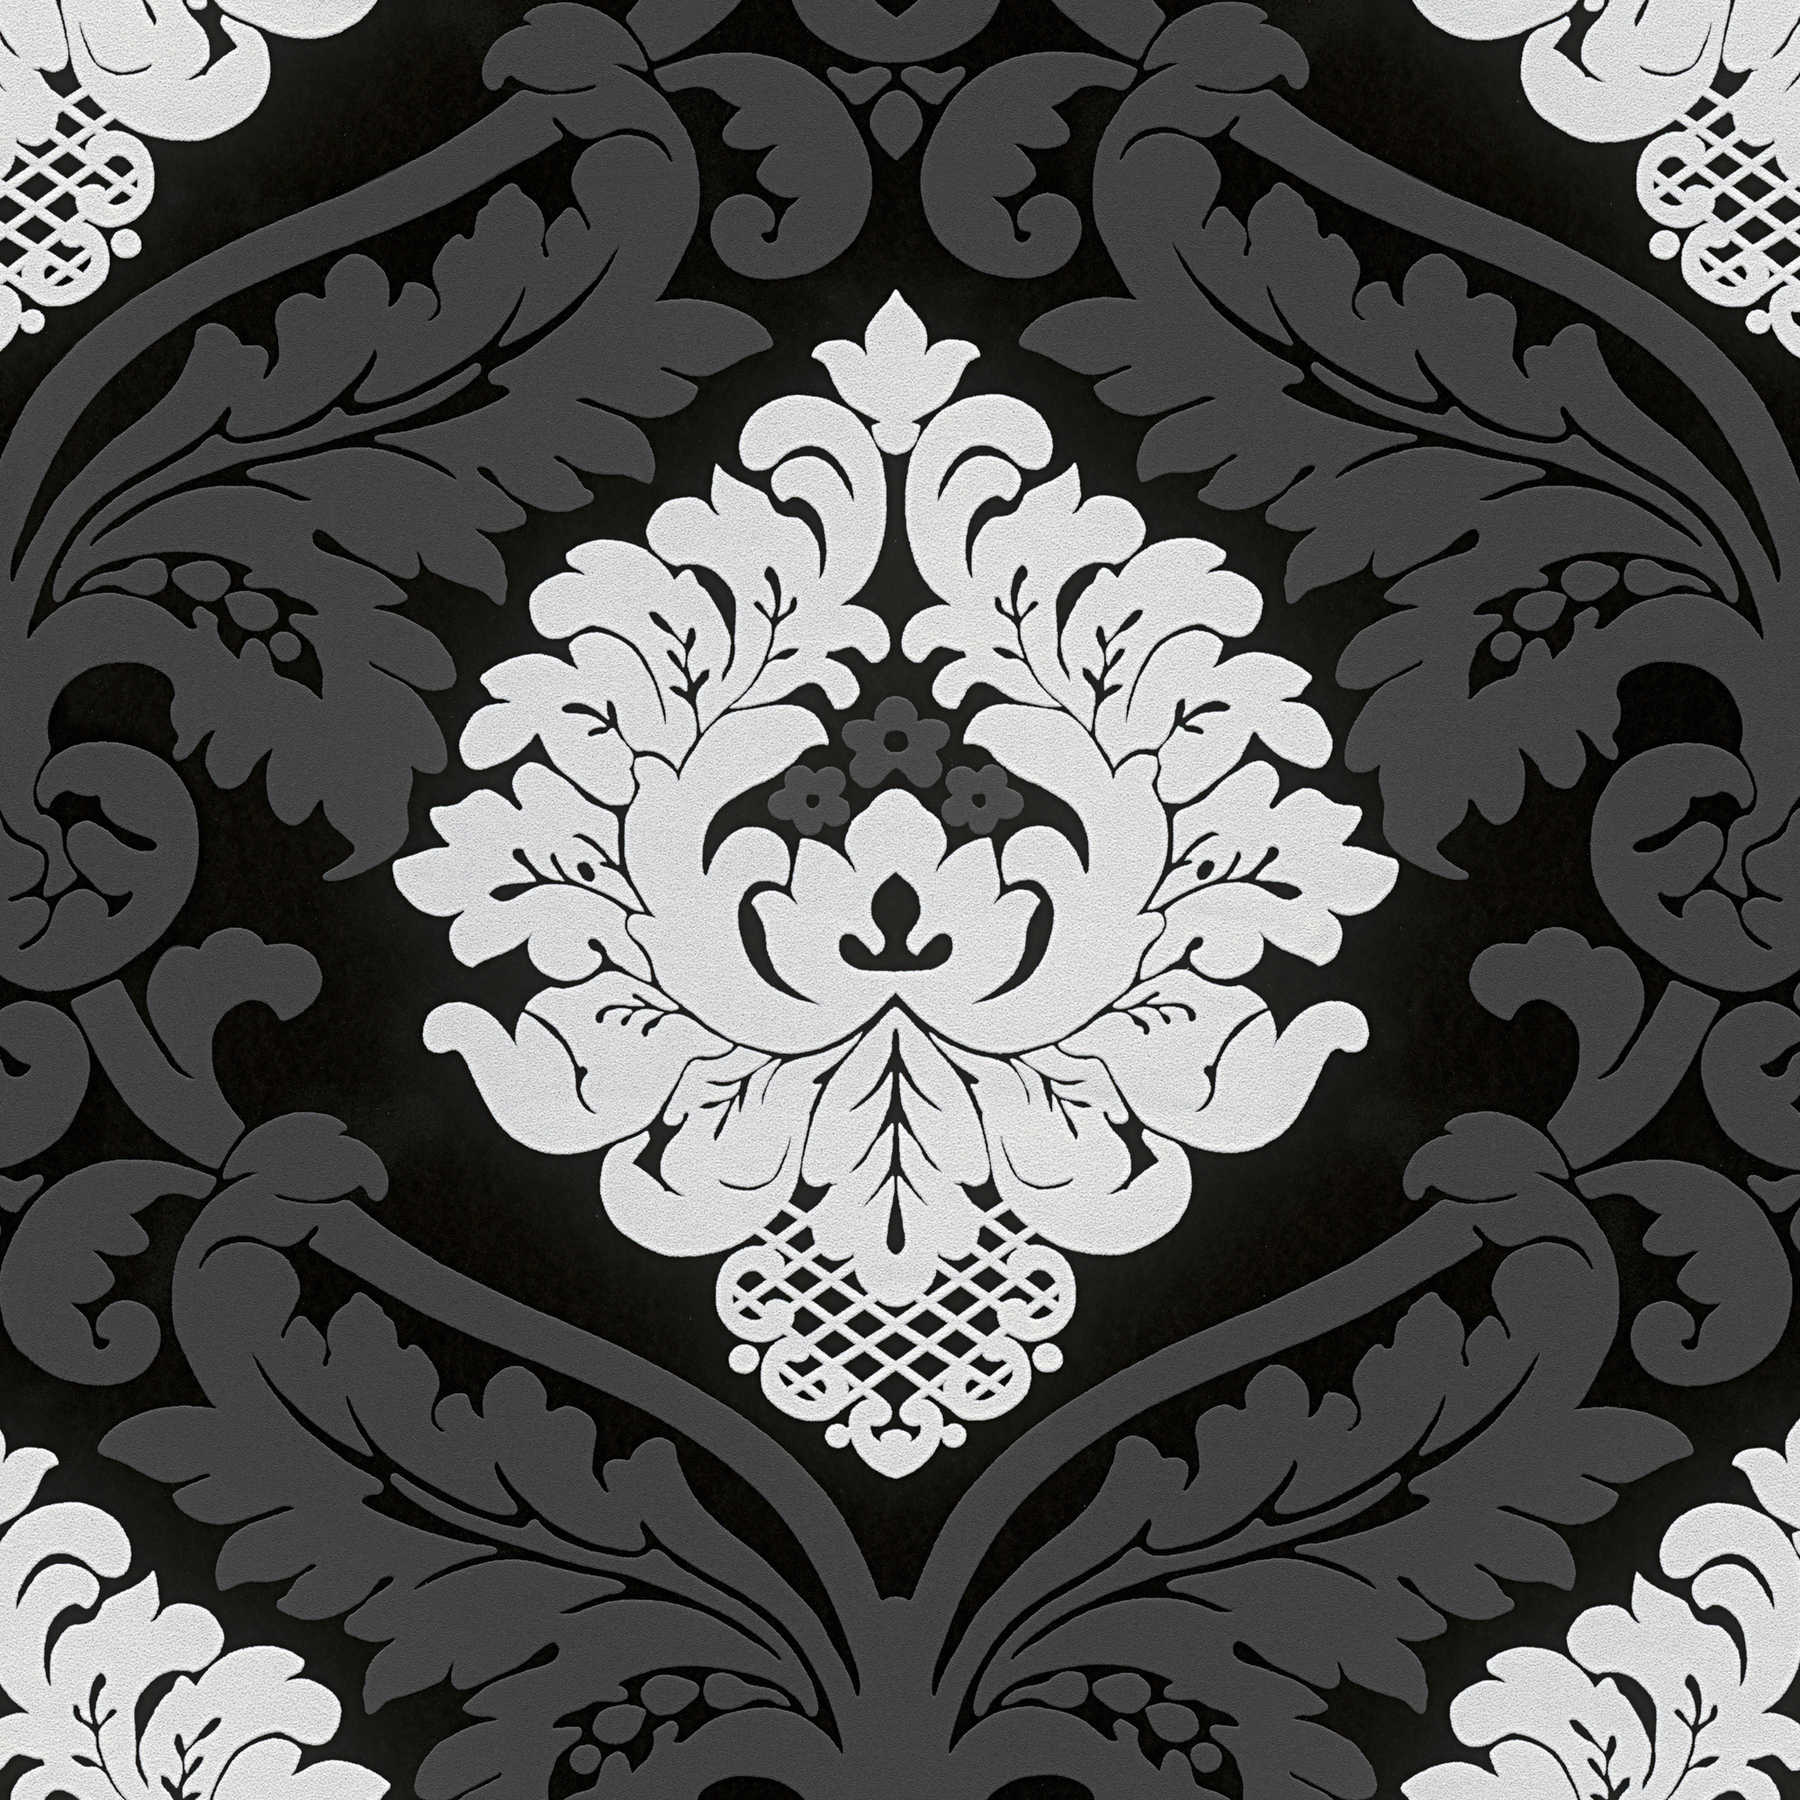             Papel pintado barroco blanco y negro con efecto mate-brillante
        